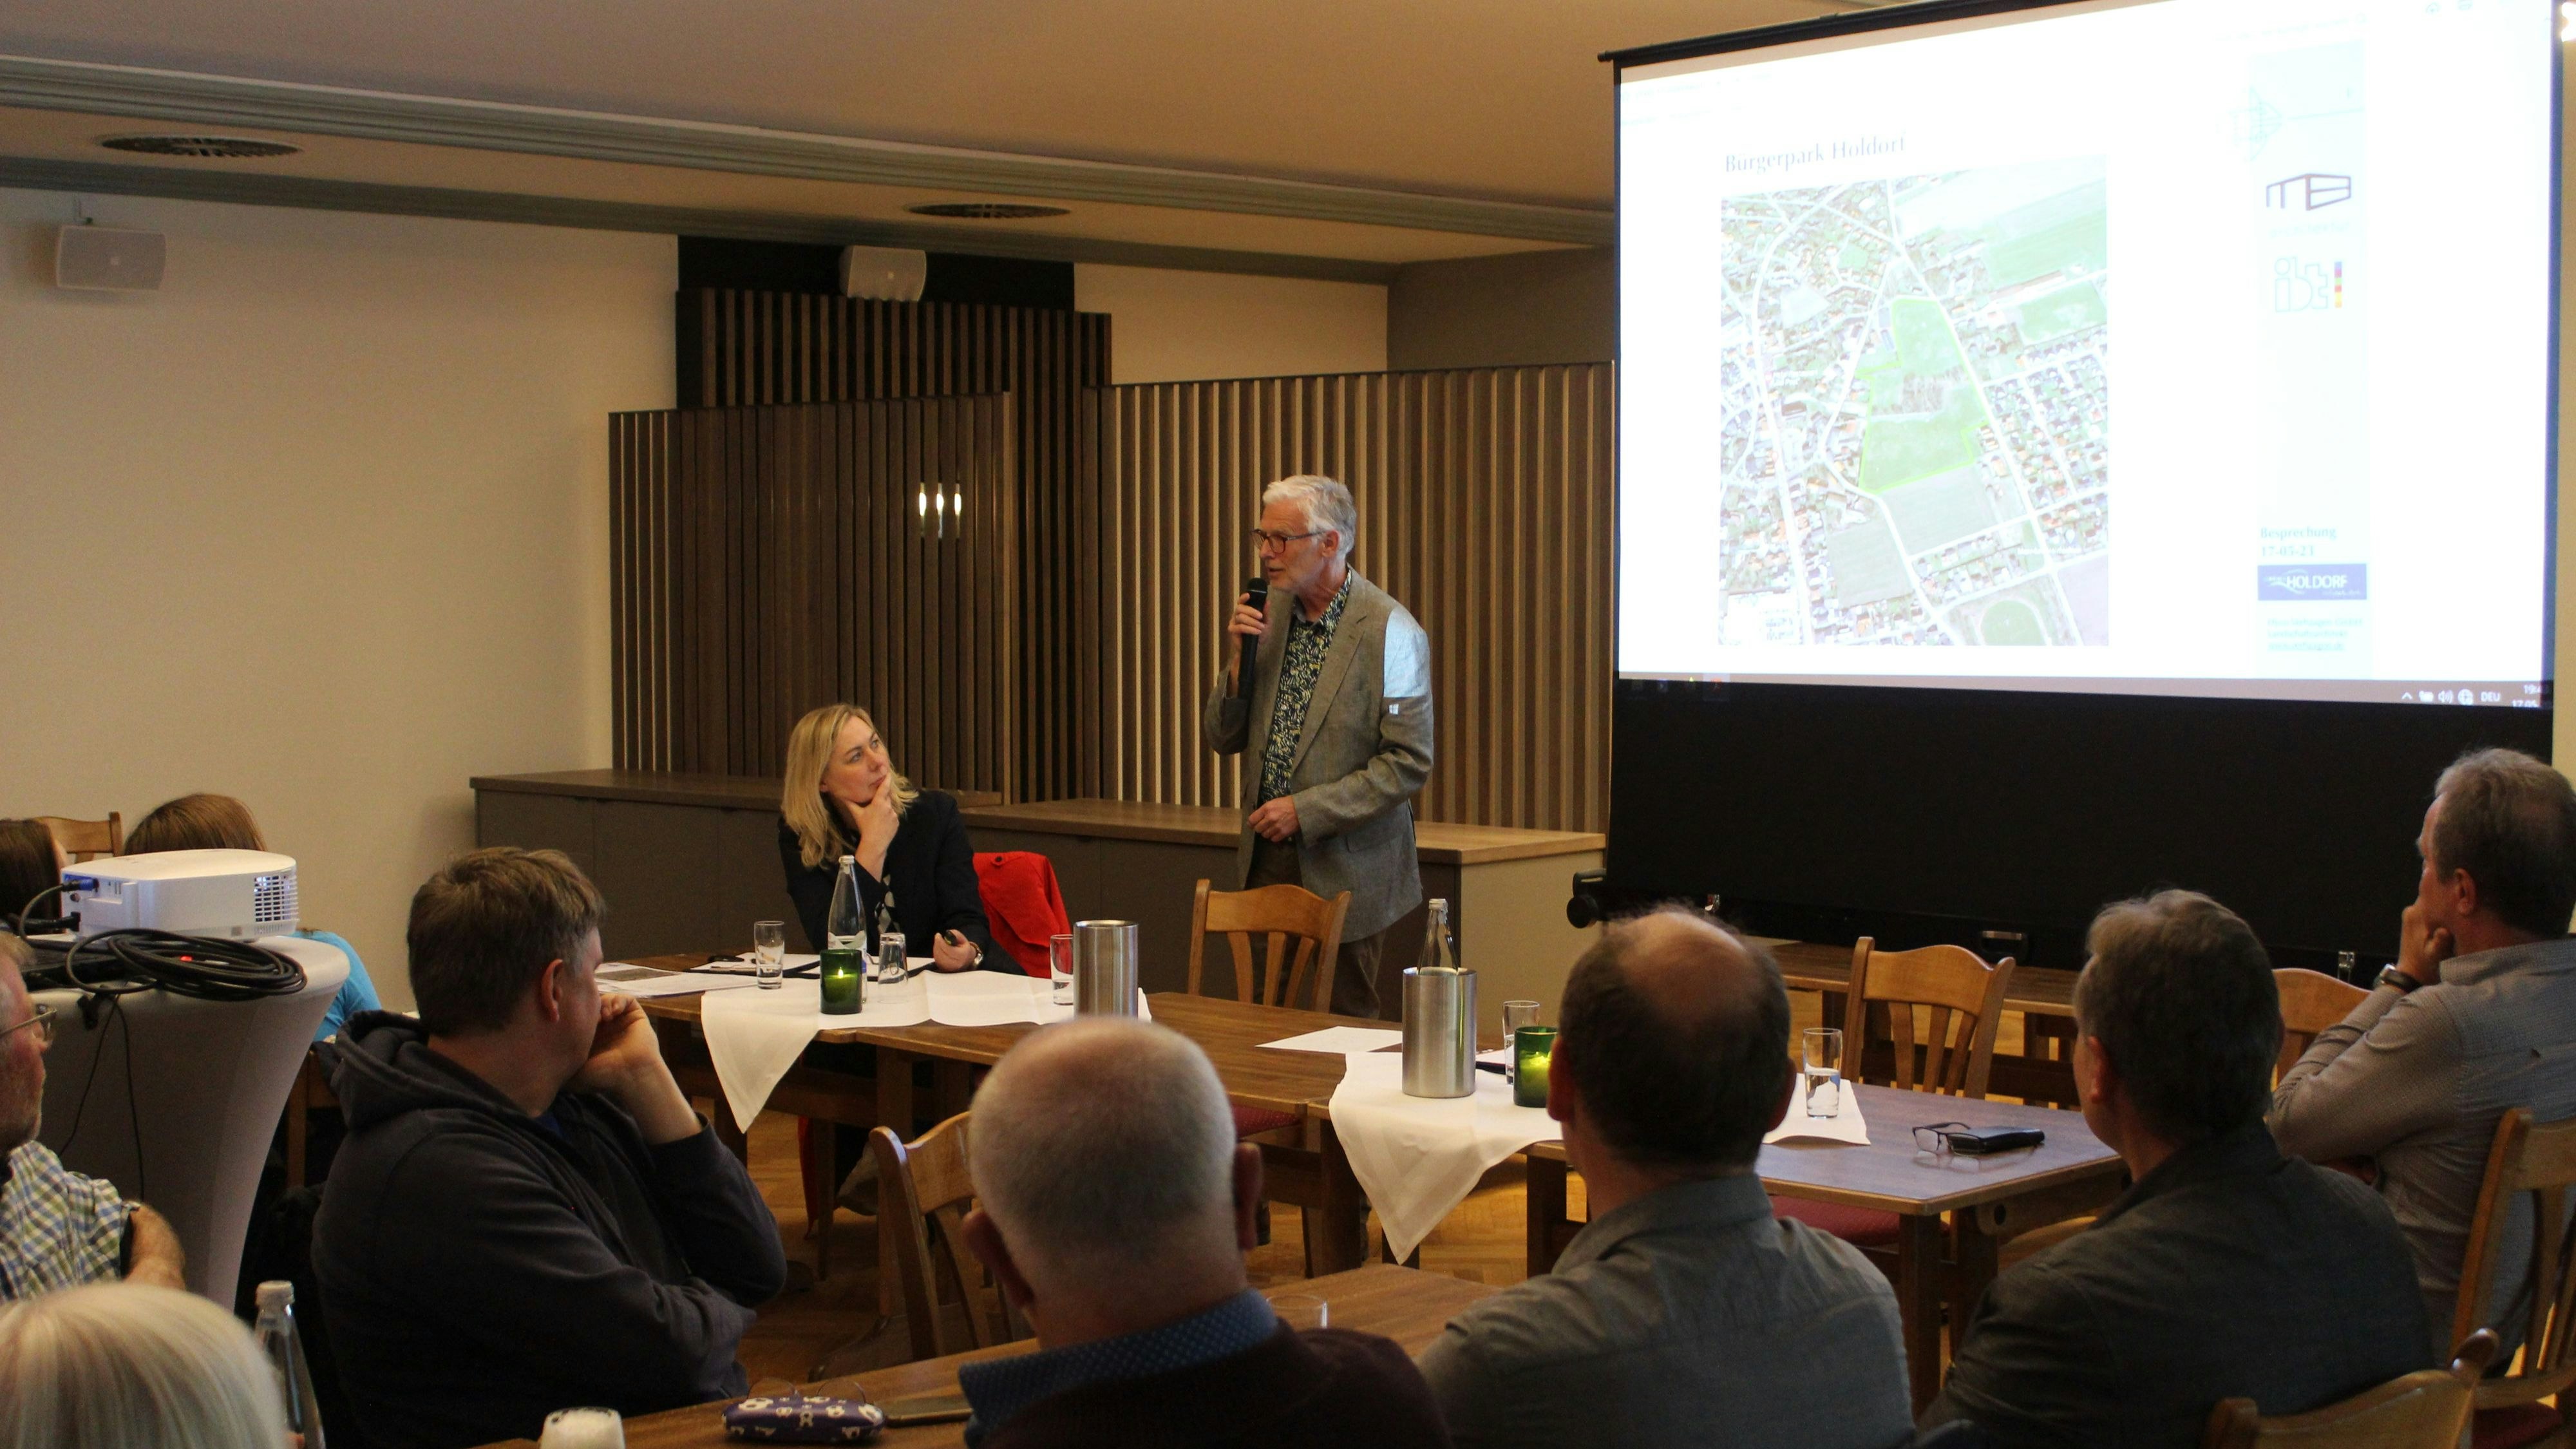 Landschaftsplaner Hyco Verhaagen erläuterte die Ideen und Möglichkeiten für den Bürgerpark. Foto: Heinzel